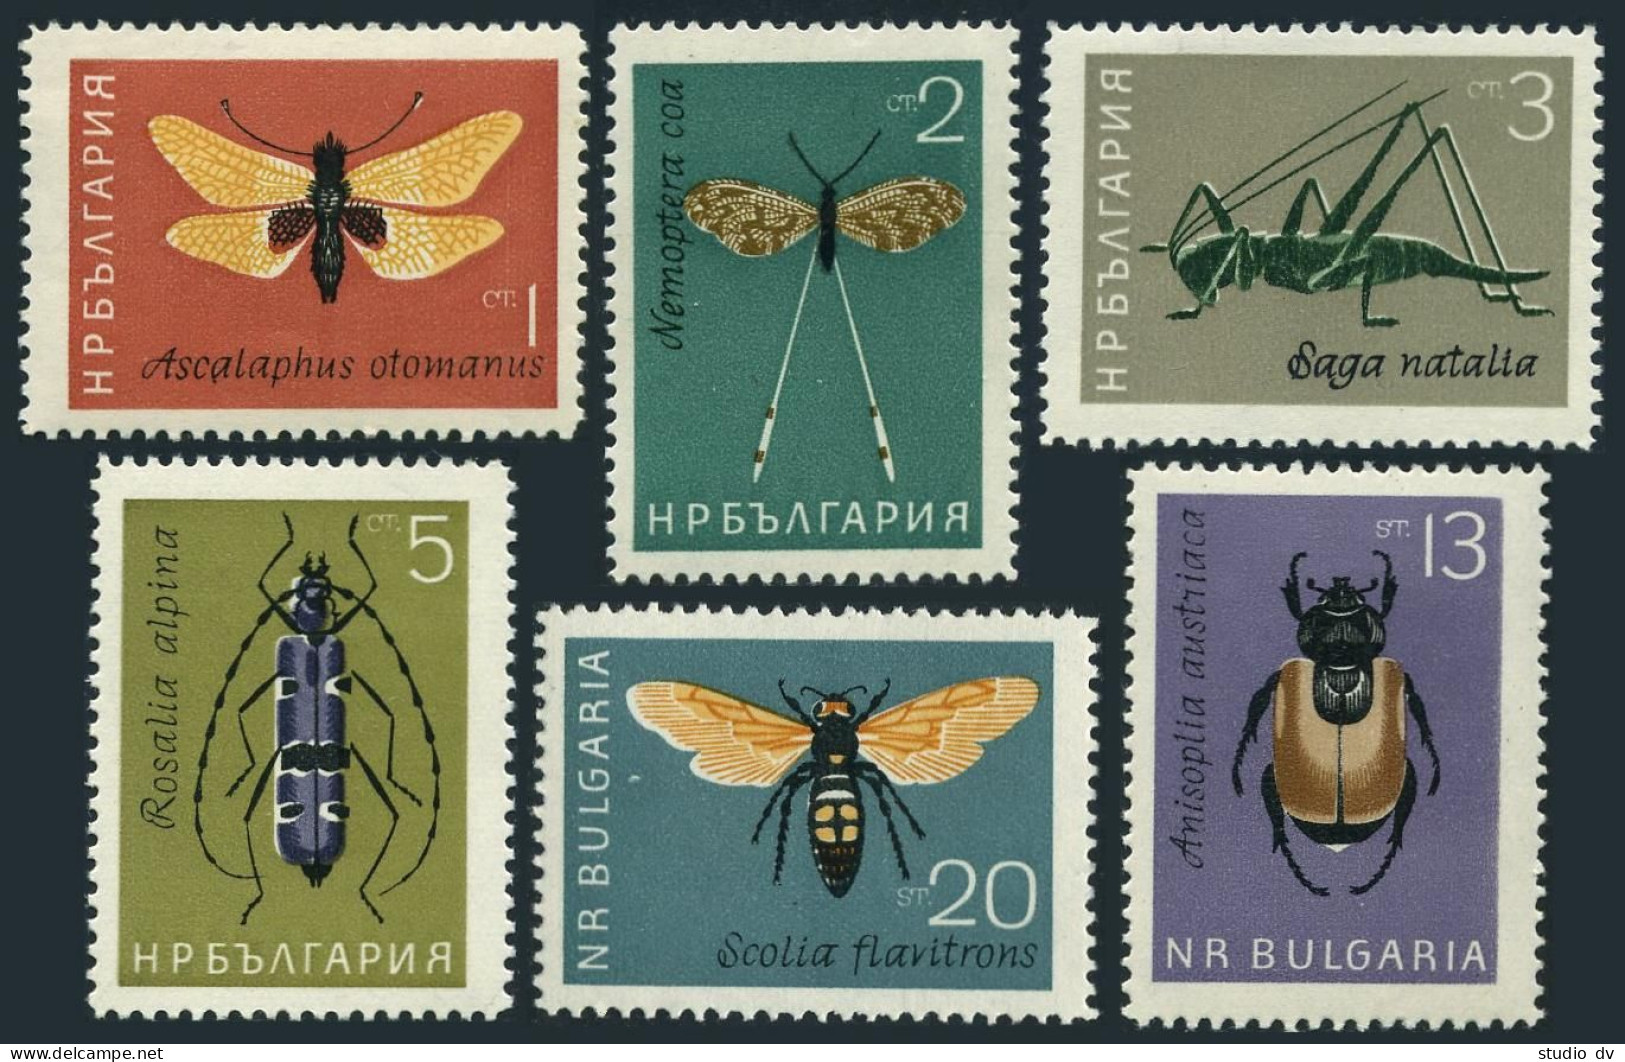 Bulgaria 1332-1337, MNH. Mi 1446-1451. Insects 1964. Butterflies, Grasshopper, - Ongebruikt